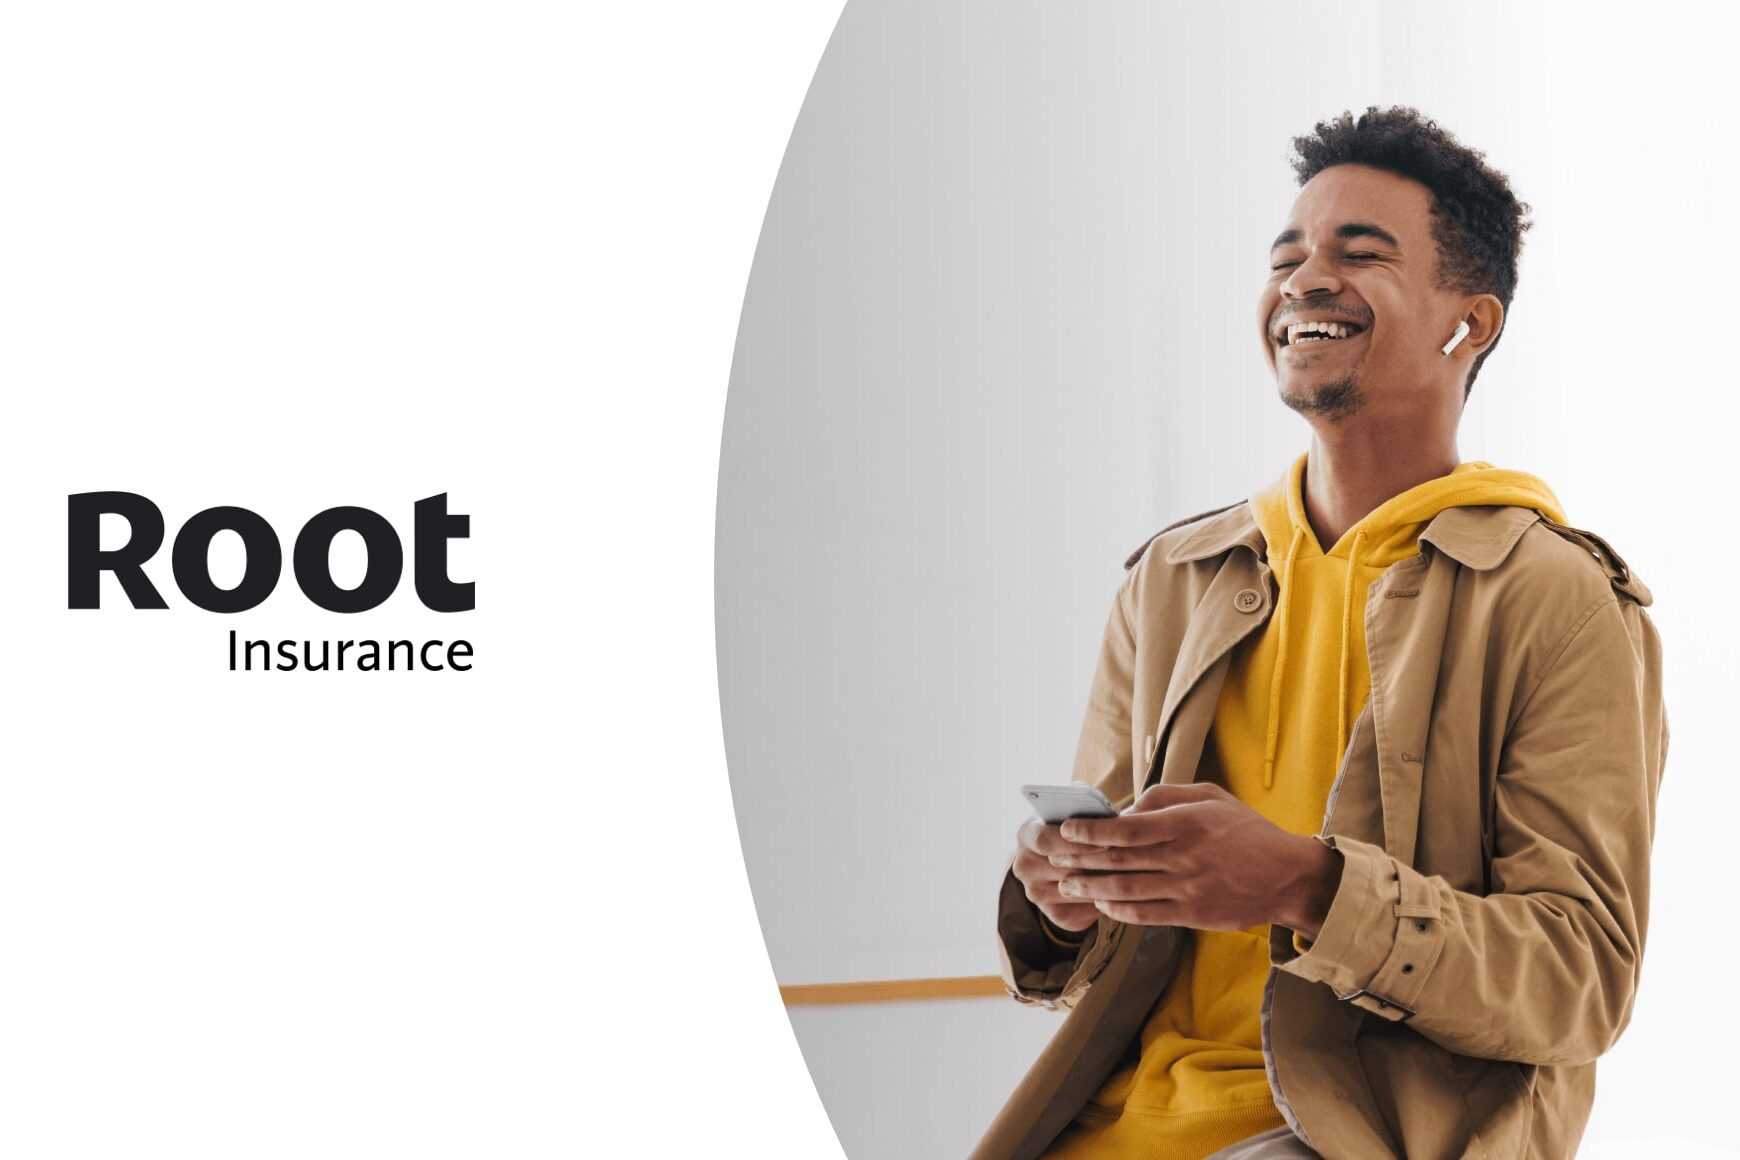 Découvrez comment Root Insurance révolutionne le CX avec Talkdesk.